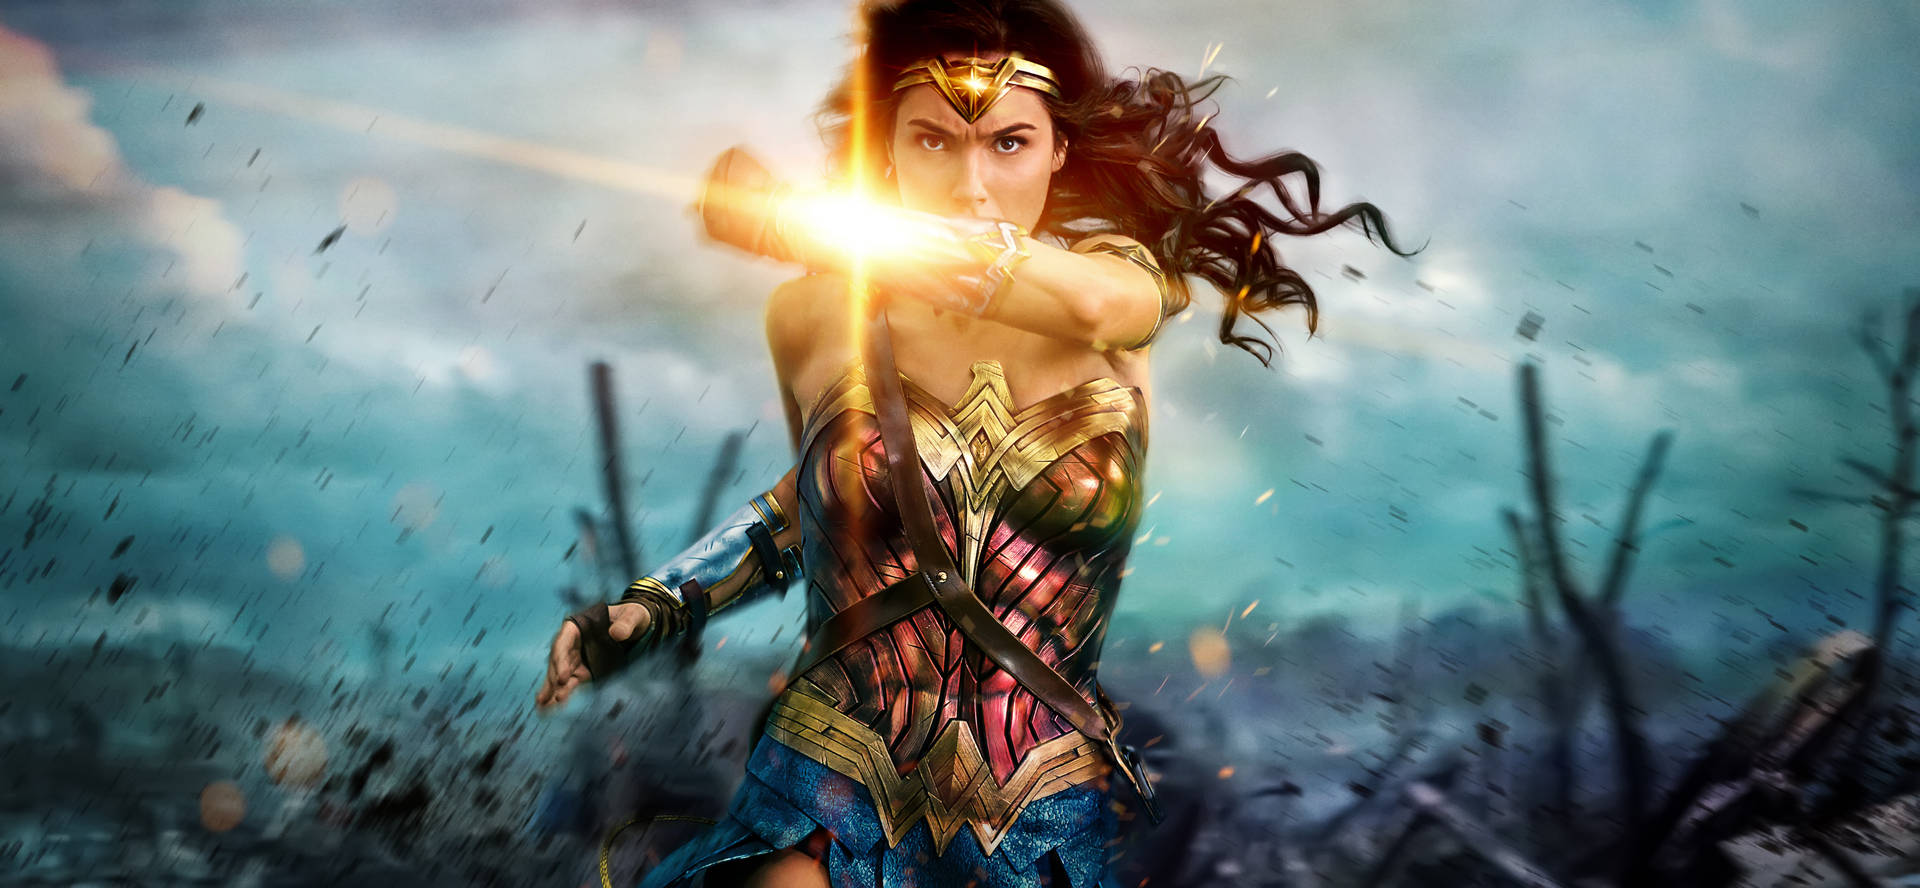 Wonder Woman Strikes a Heroic Pose Wallpaper